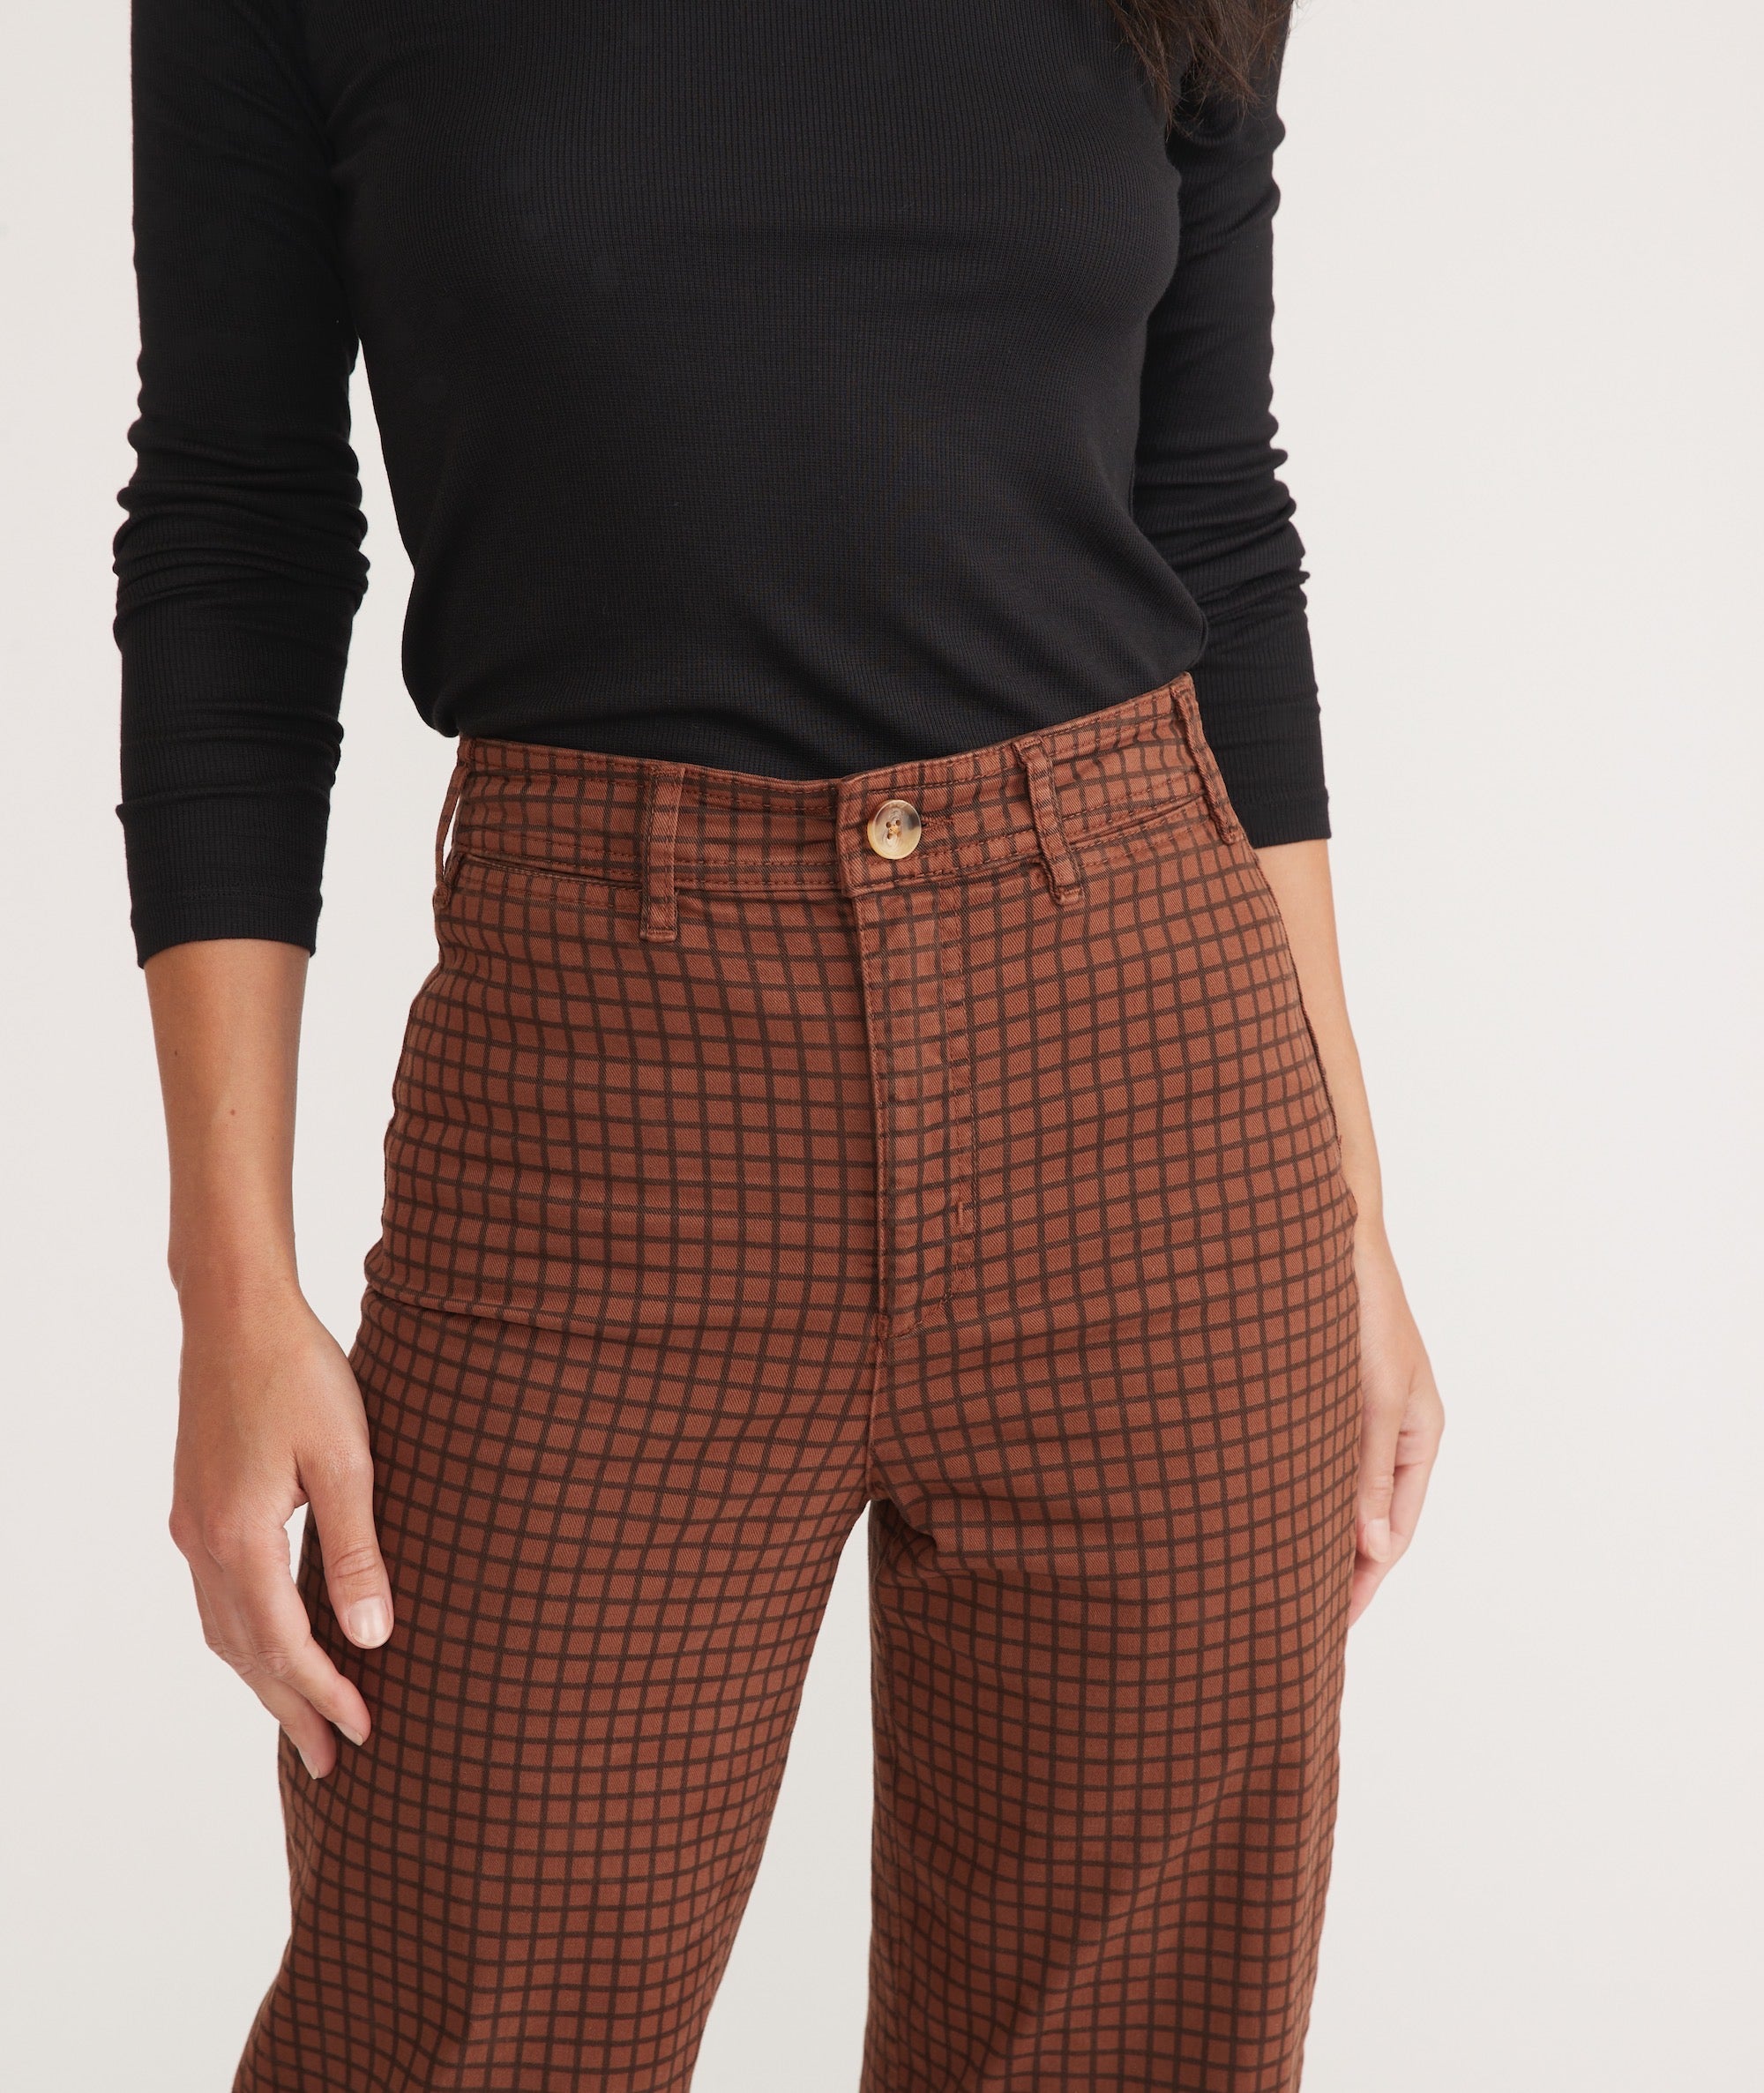 Women's Brown Cropped & Capri Pants